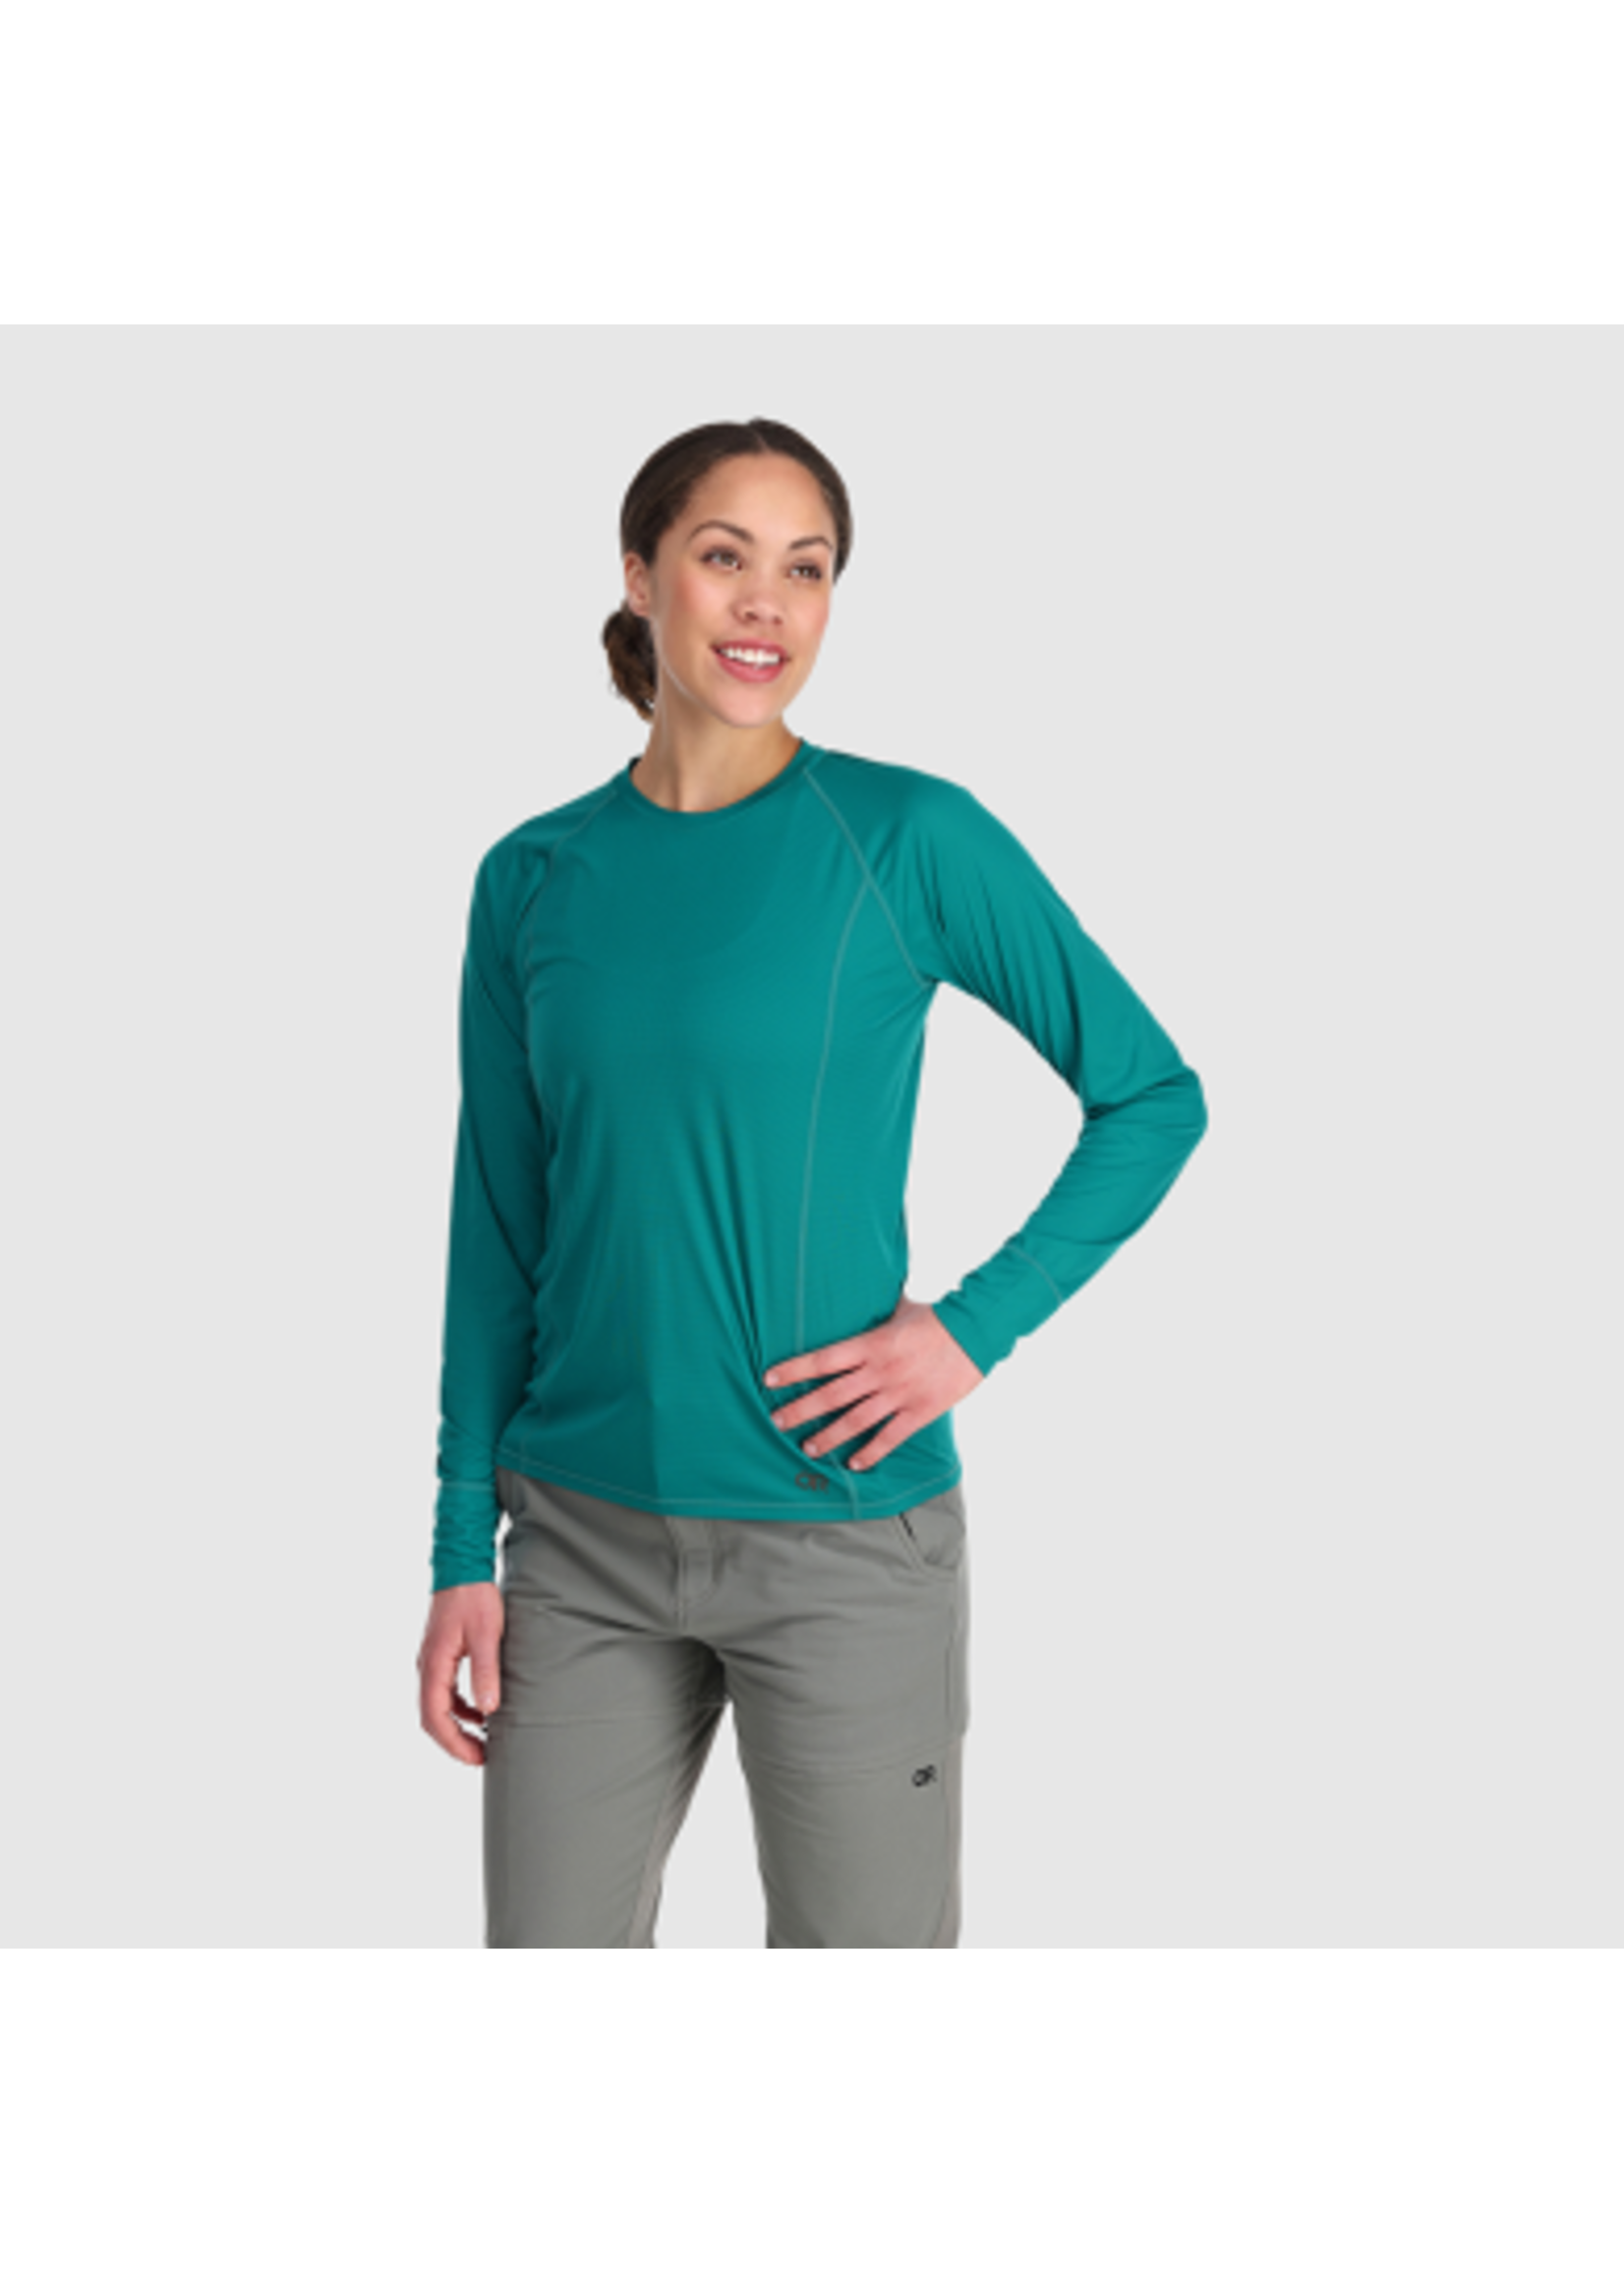 Outdoor Research Women's Echo Long Sleeve Shirt